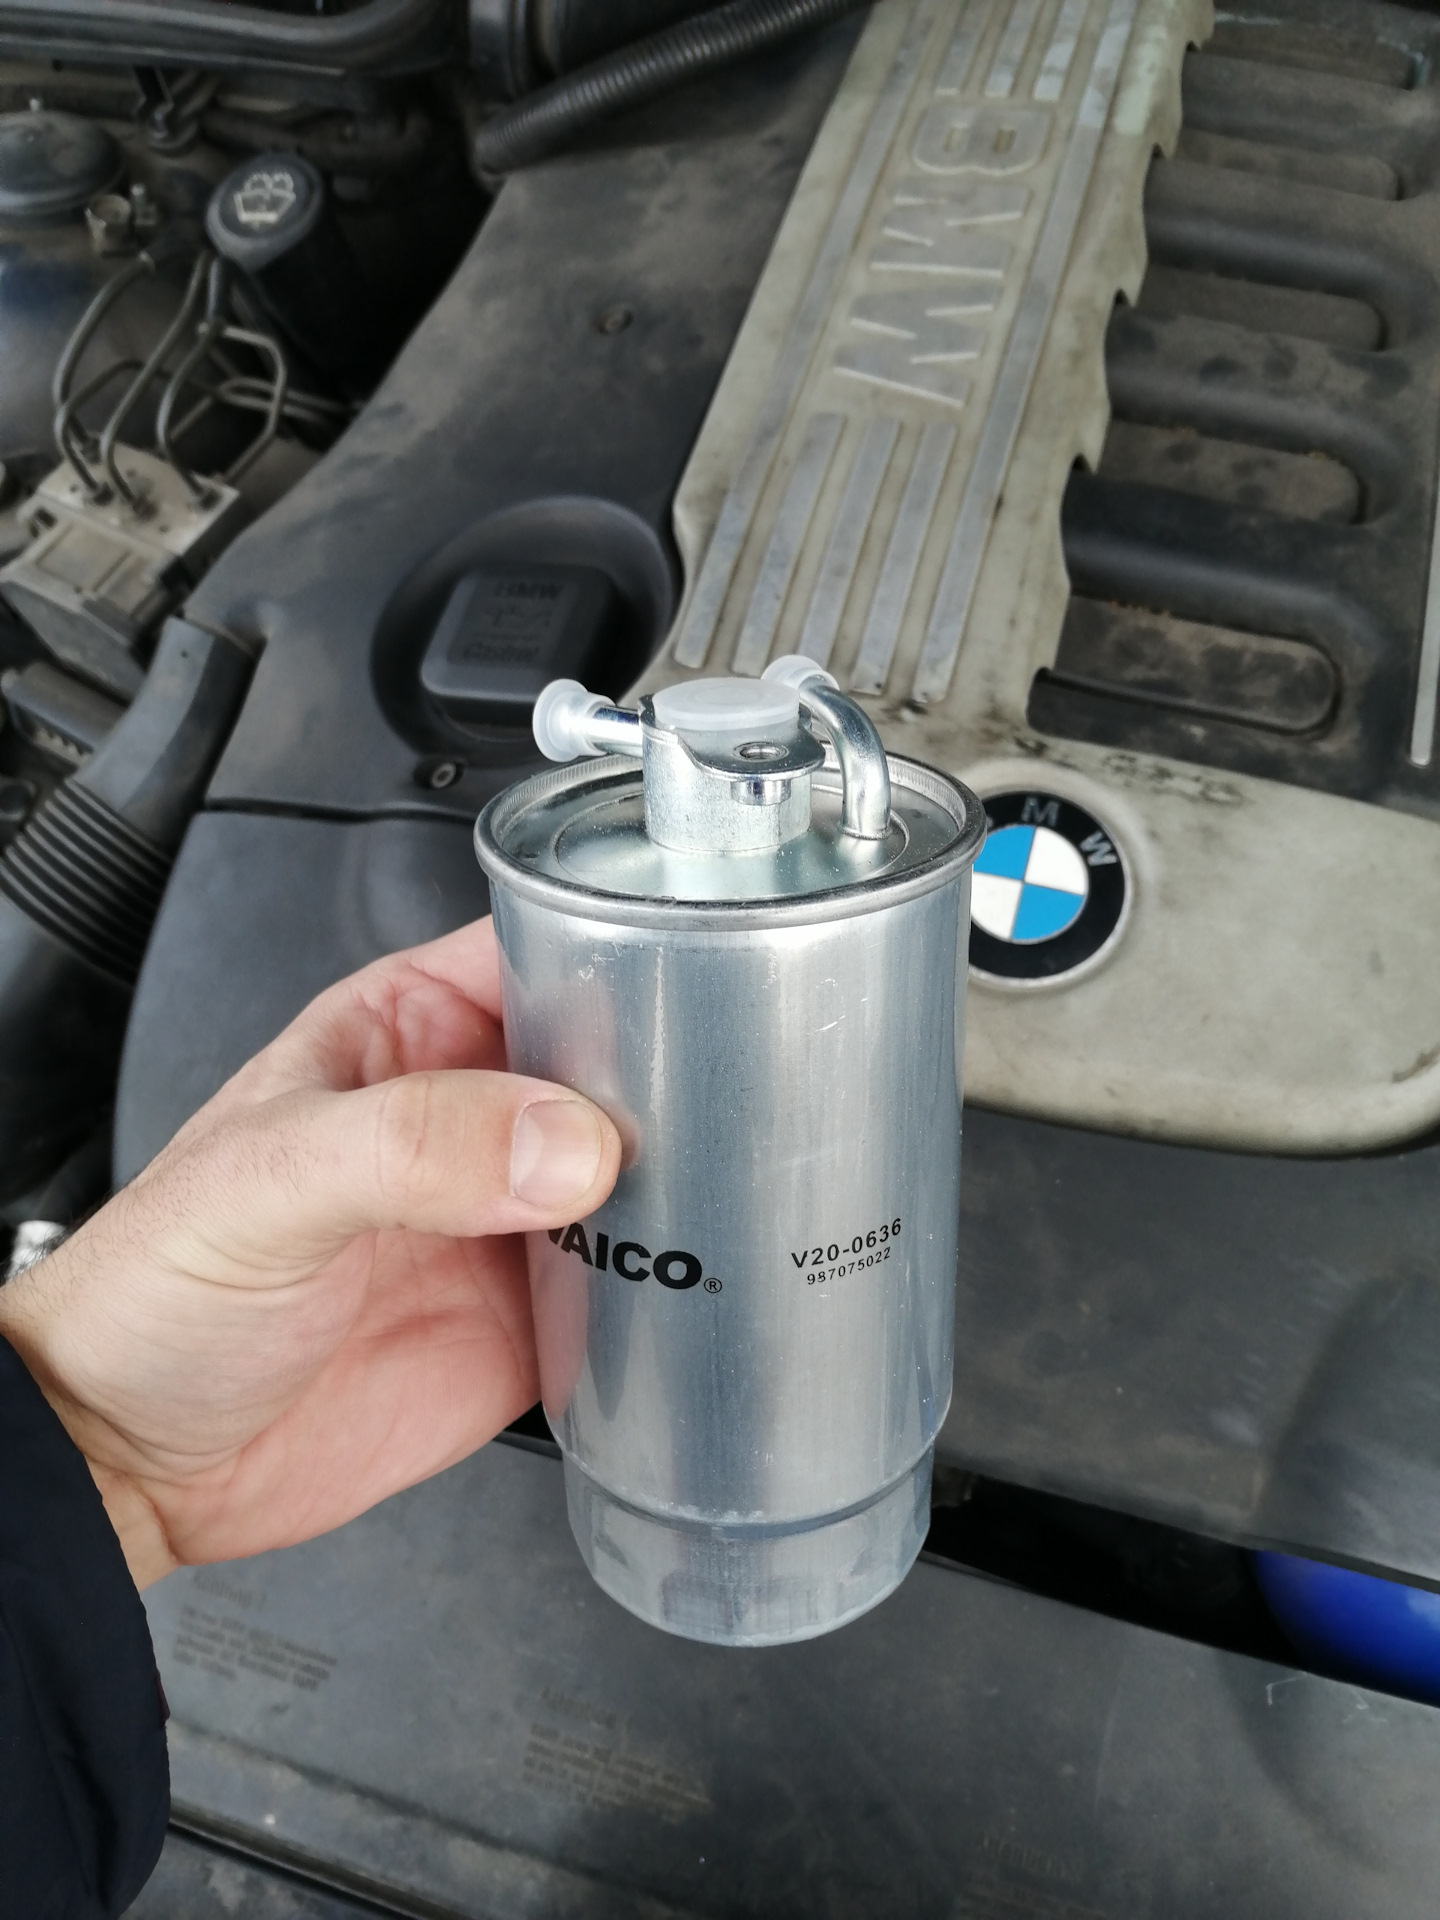 Топливный фильтр е60. BMW e39 3.0 фильтр топливный. Фильтр топливный BMW f10 дизель. BMW e39 2.5 дизель топливный фильтр. Топливный фильтр БМВ е60 дизель.